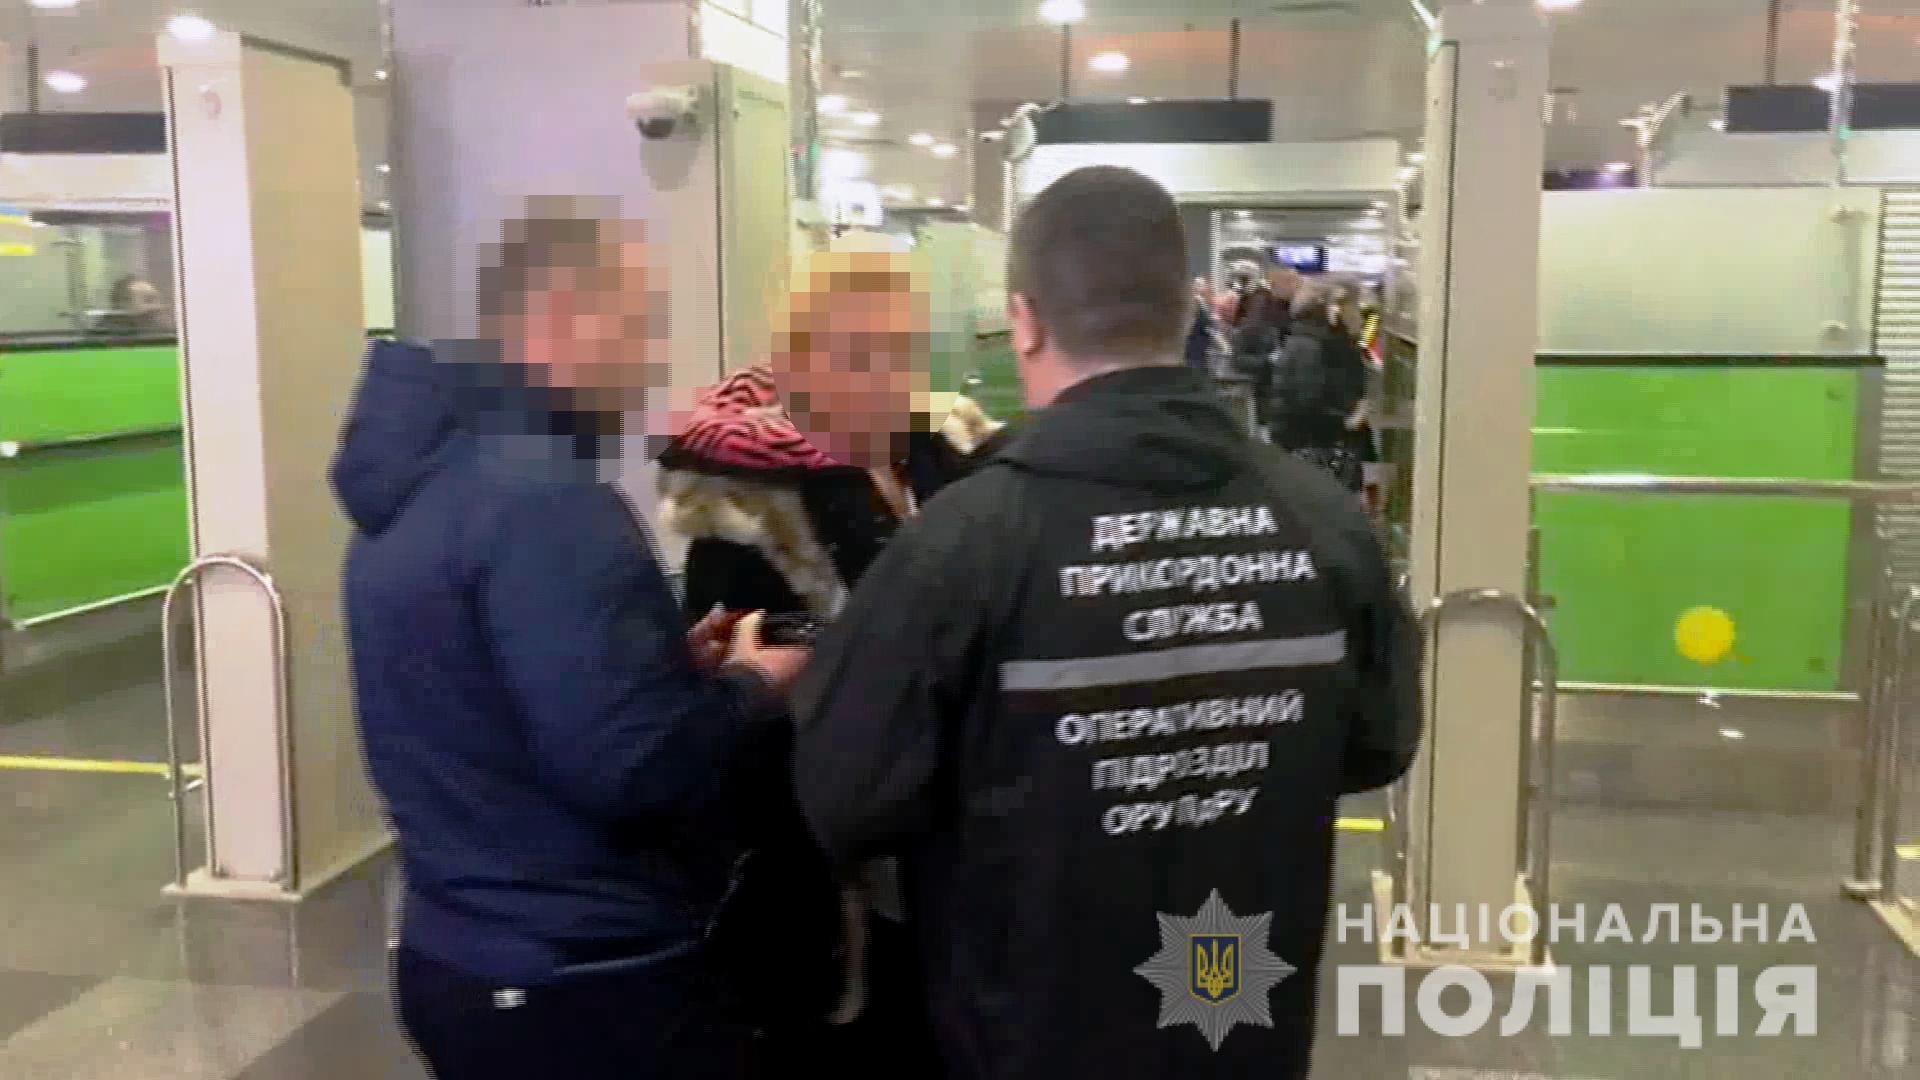 Полиция задержала бывшую гражданку Украины, вербовавшую девушек из Одесской области в сексуальное рабство